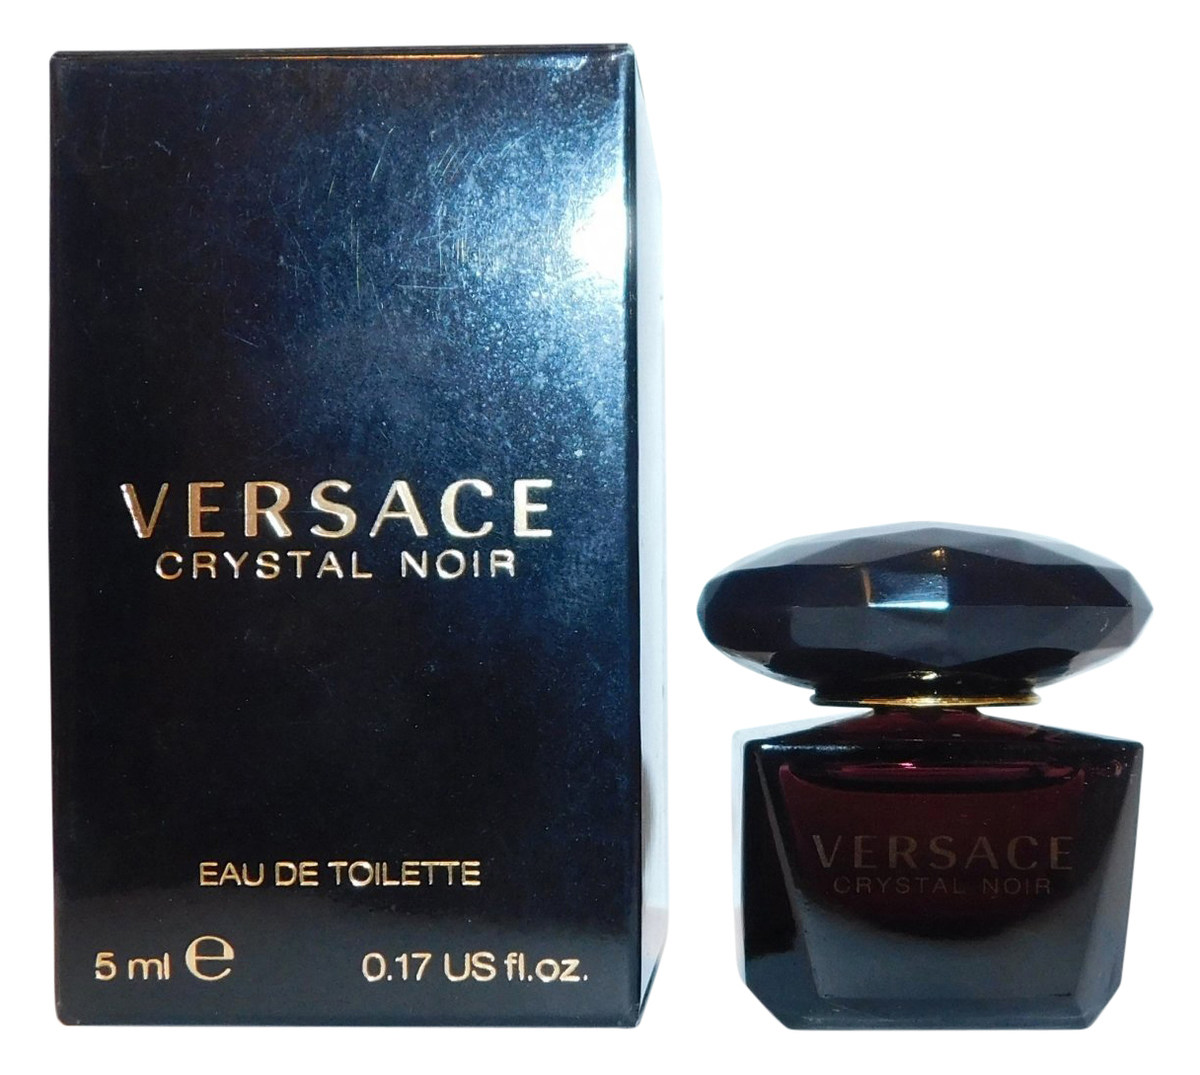 versace perfume crystal noir